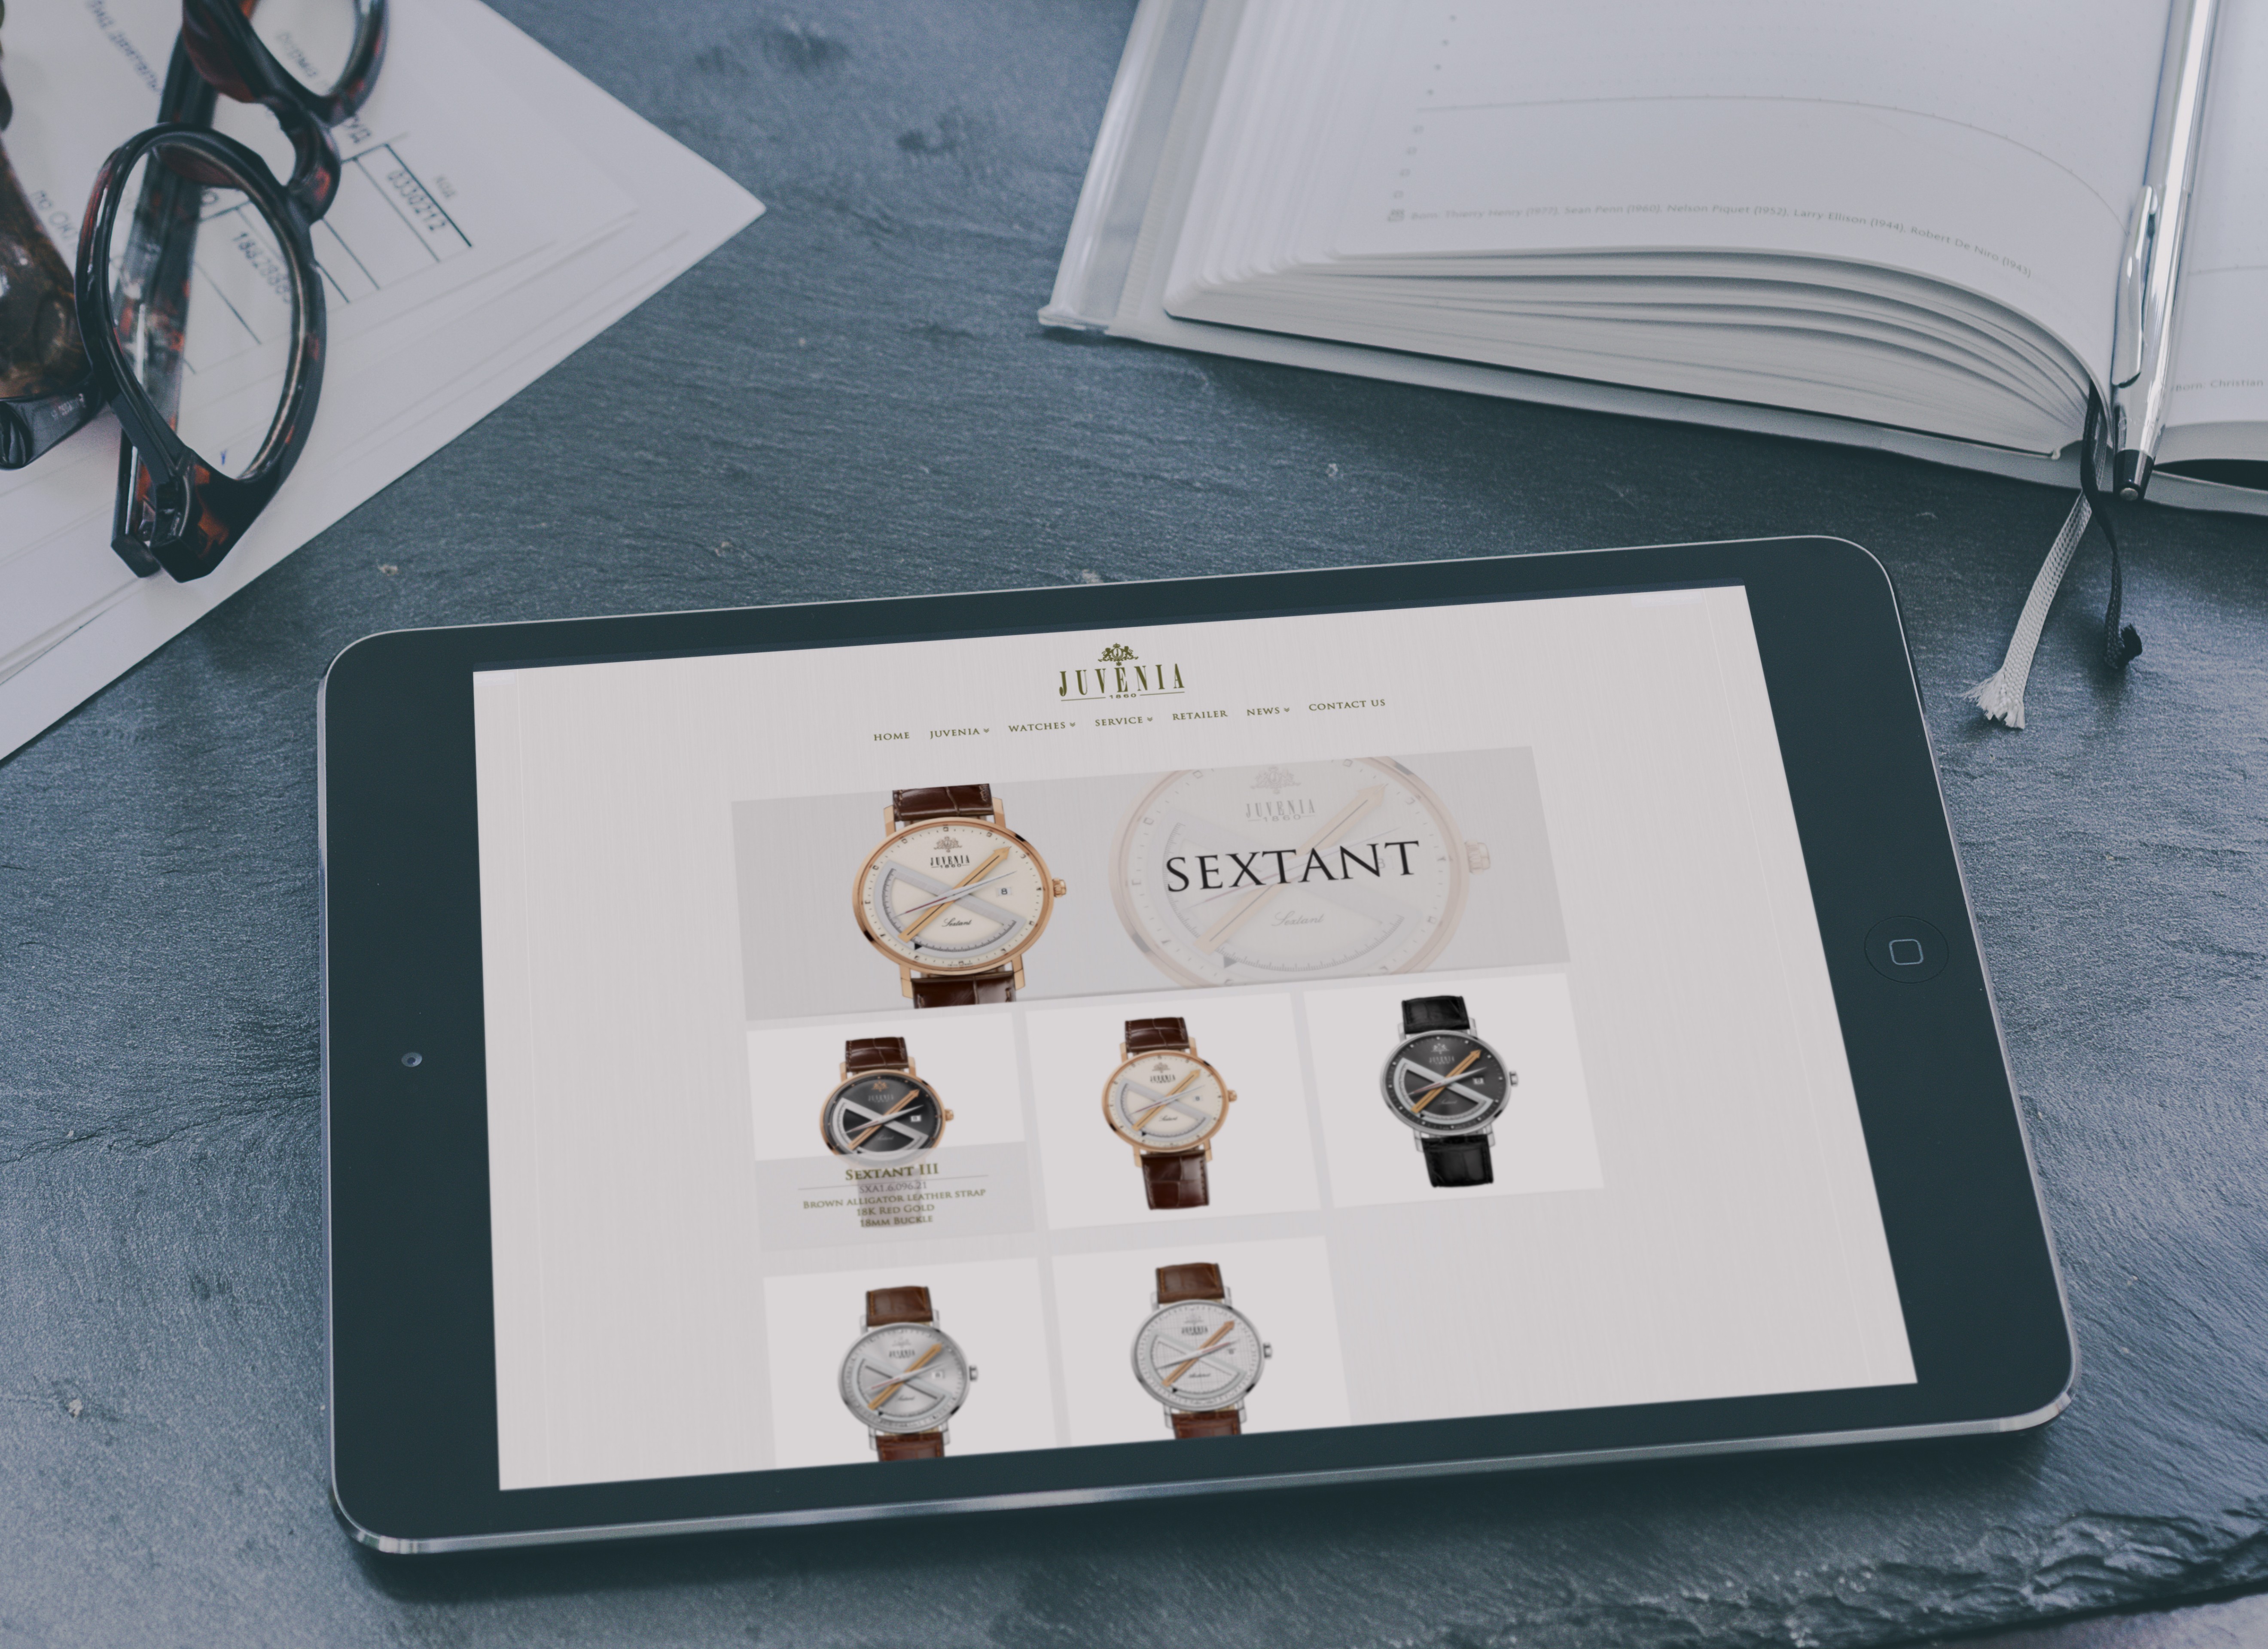 Juvenia - Luxurious Watch Website Design, Web Design, e-catalog Design